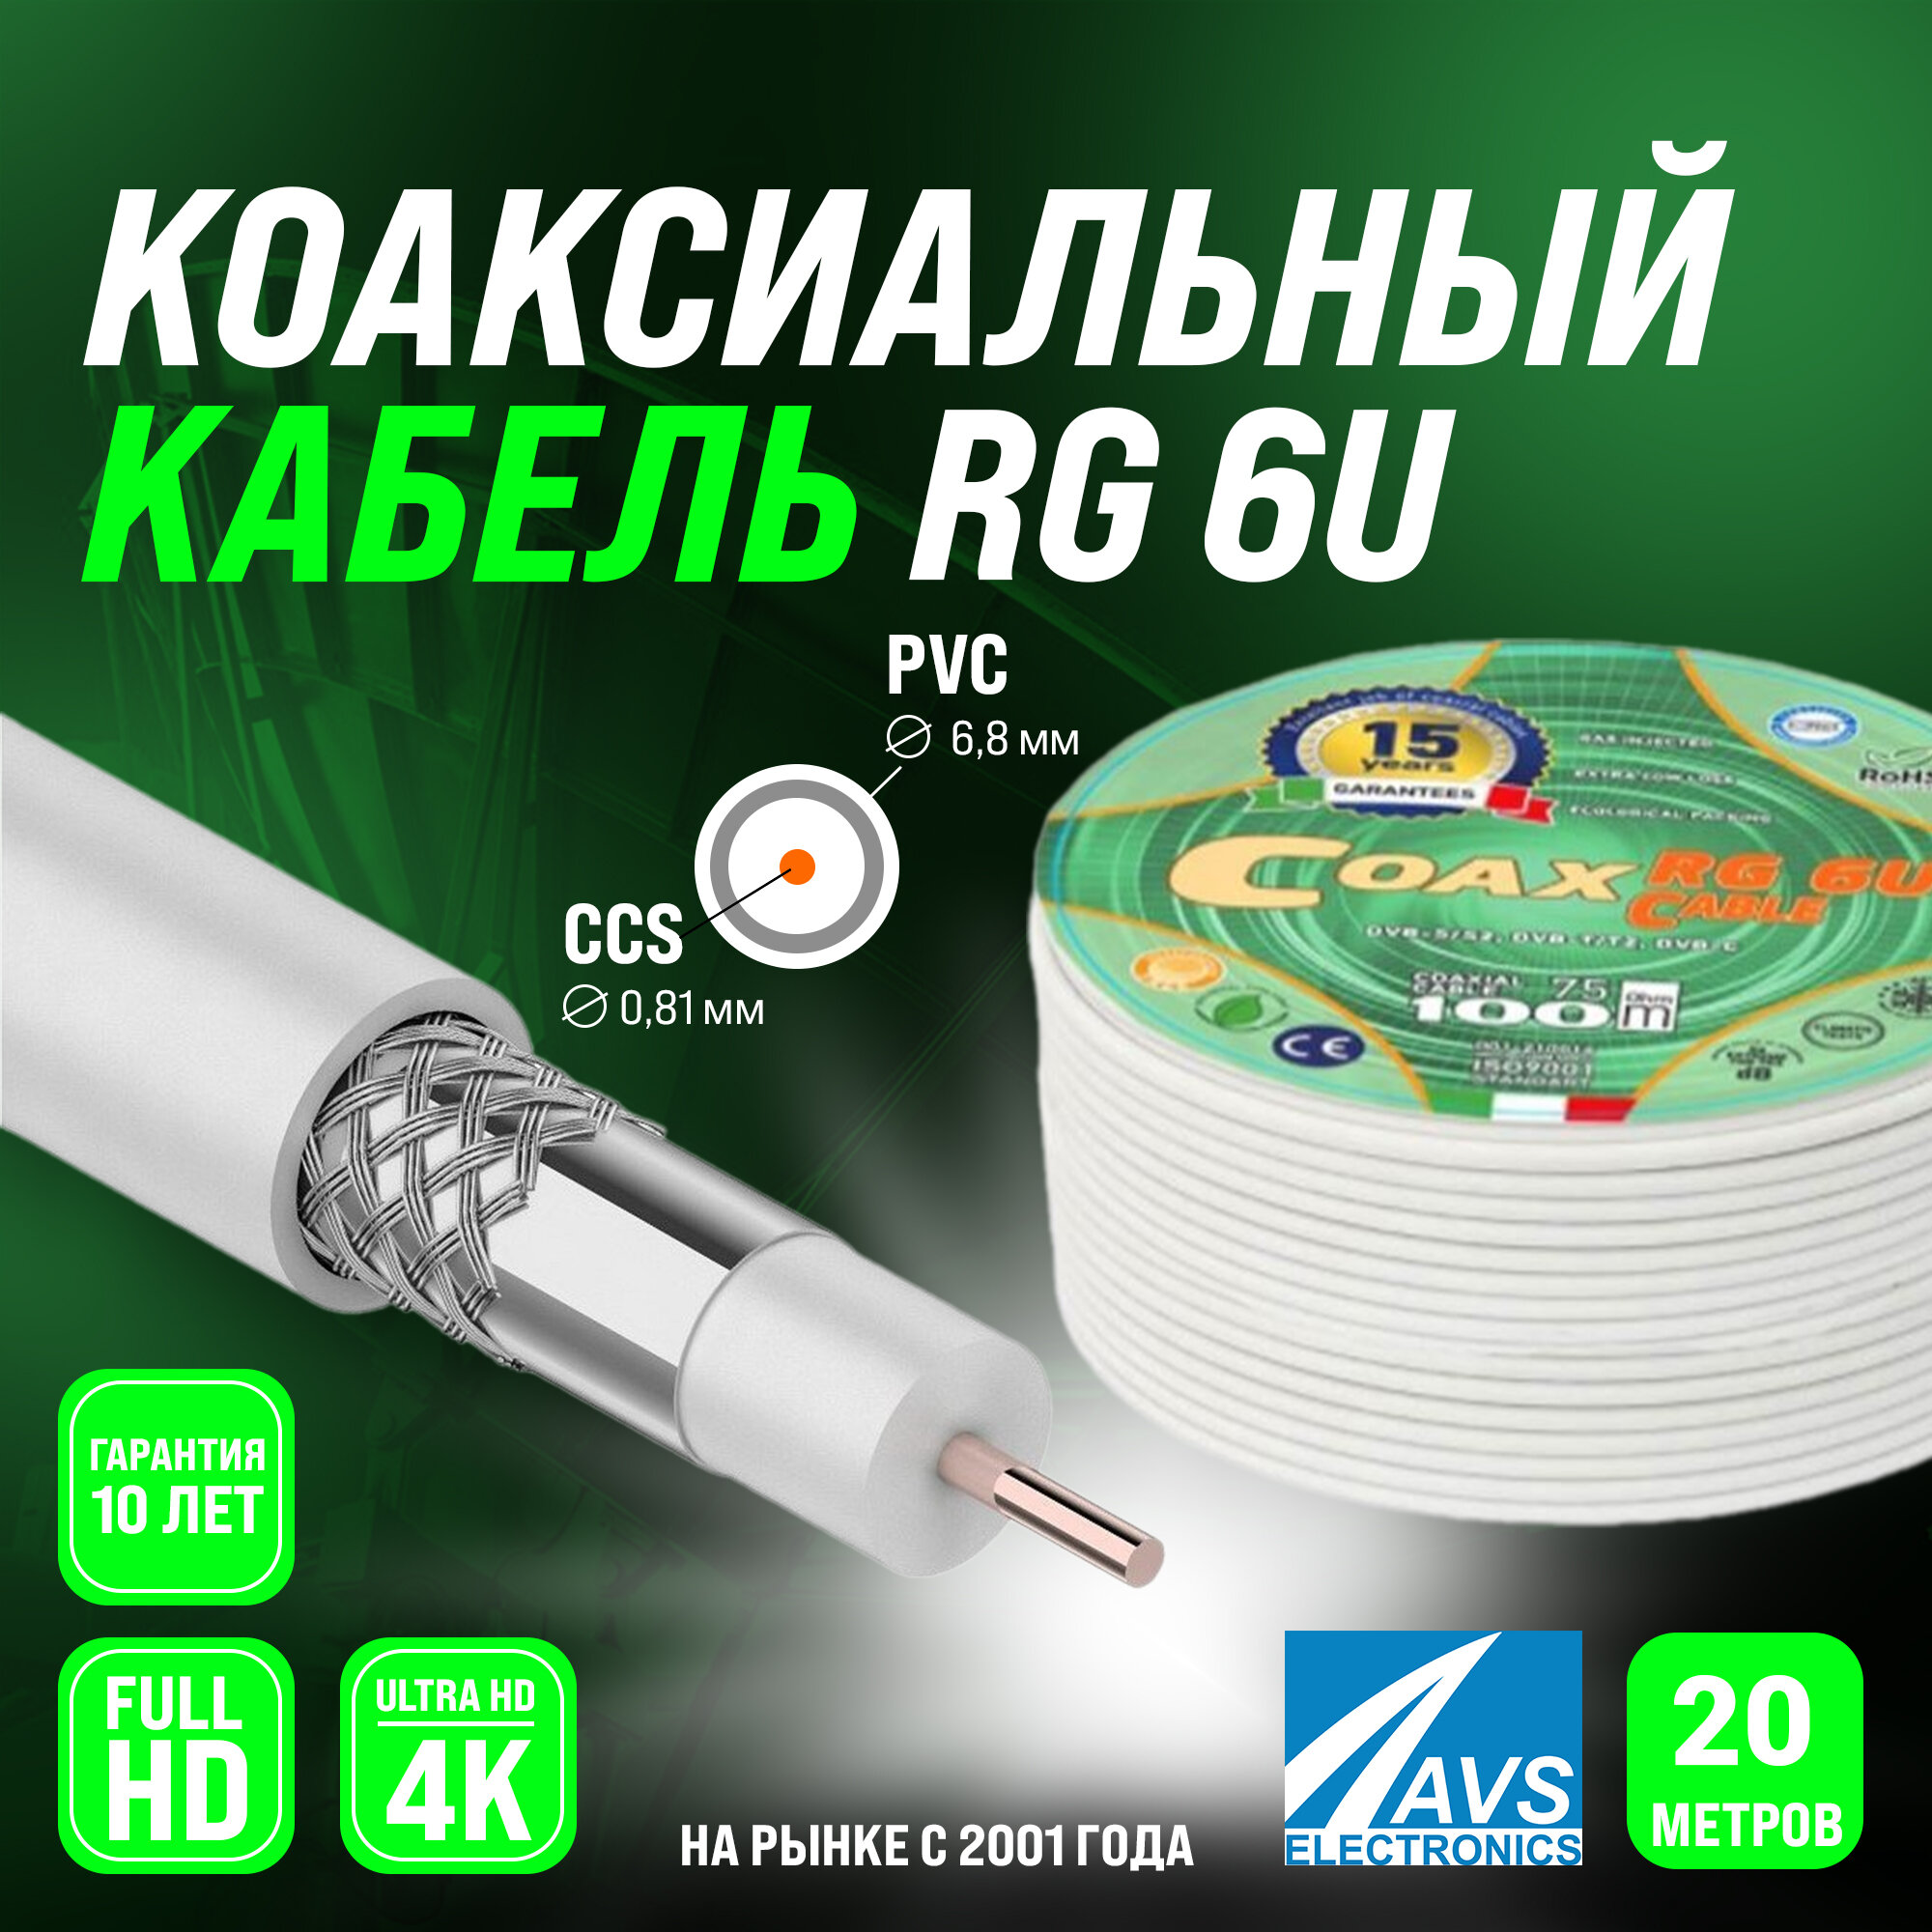 Коаксиальный телевизионный кабель 20 м RG 6 U COAX CCS AVS Electronics антенный провод рг 6 для цифрового тв 20 метров 001-210016/20